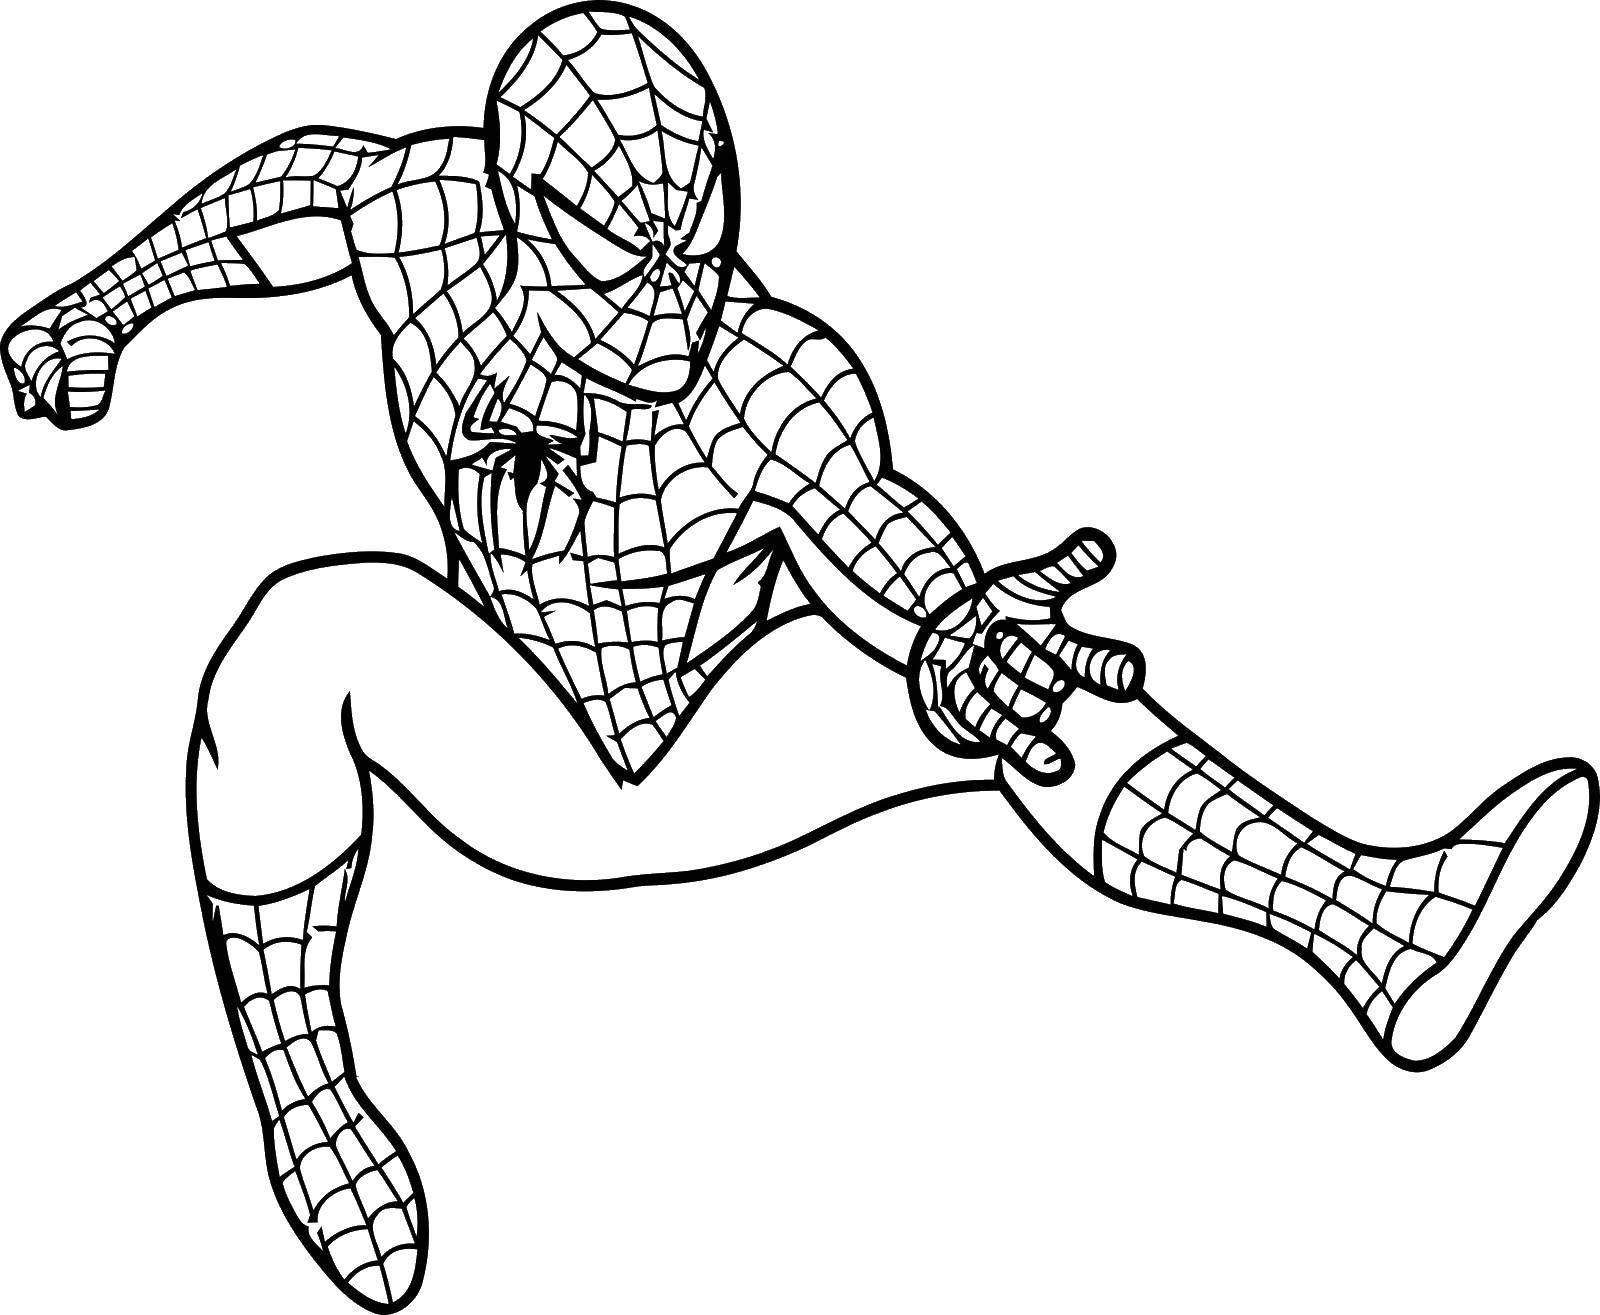 Название: Раскраска Человек паук из комиксов. Категория: Комиксы. Теги: комиксы, человек паук, спайдермен.